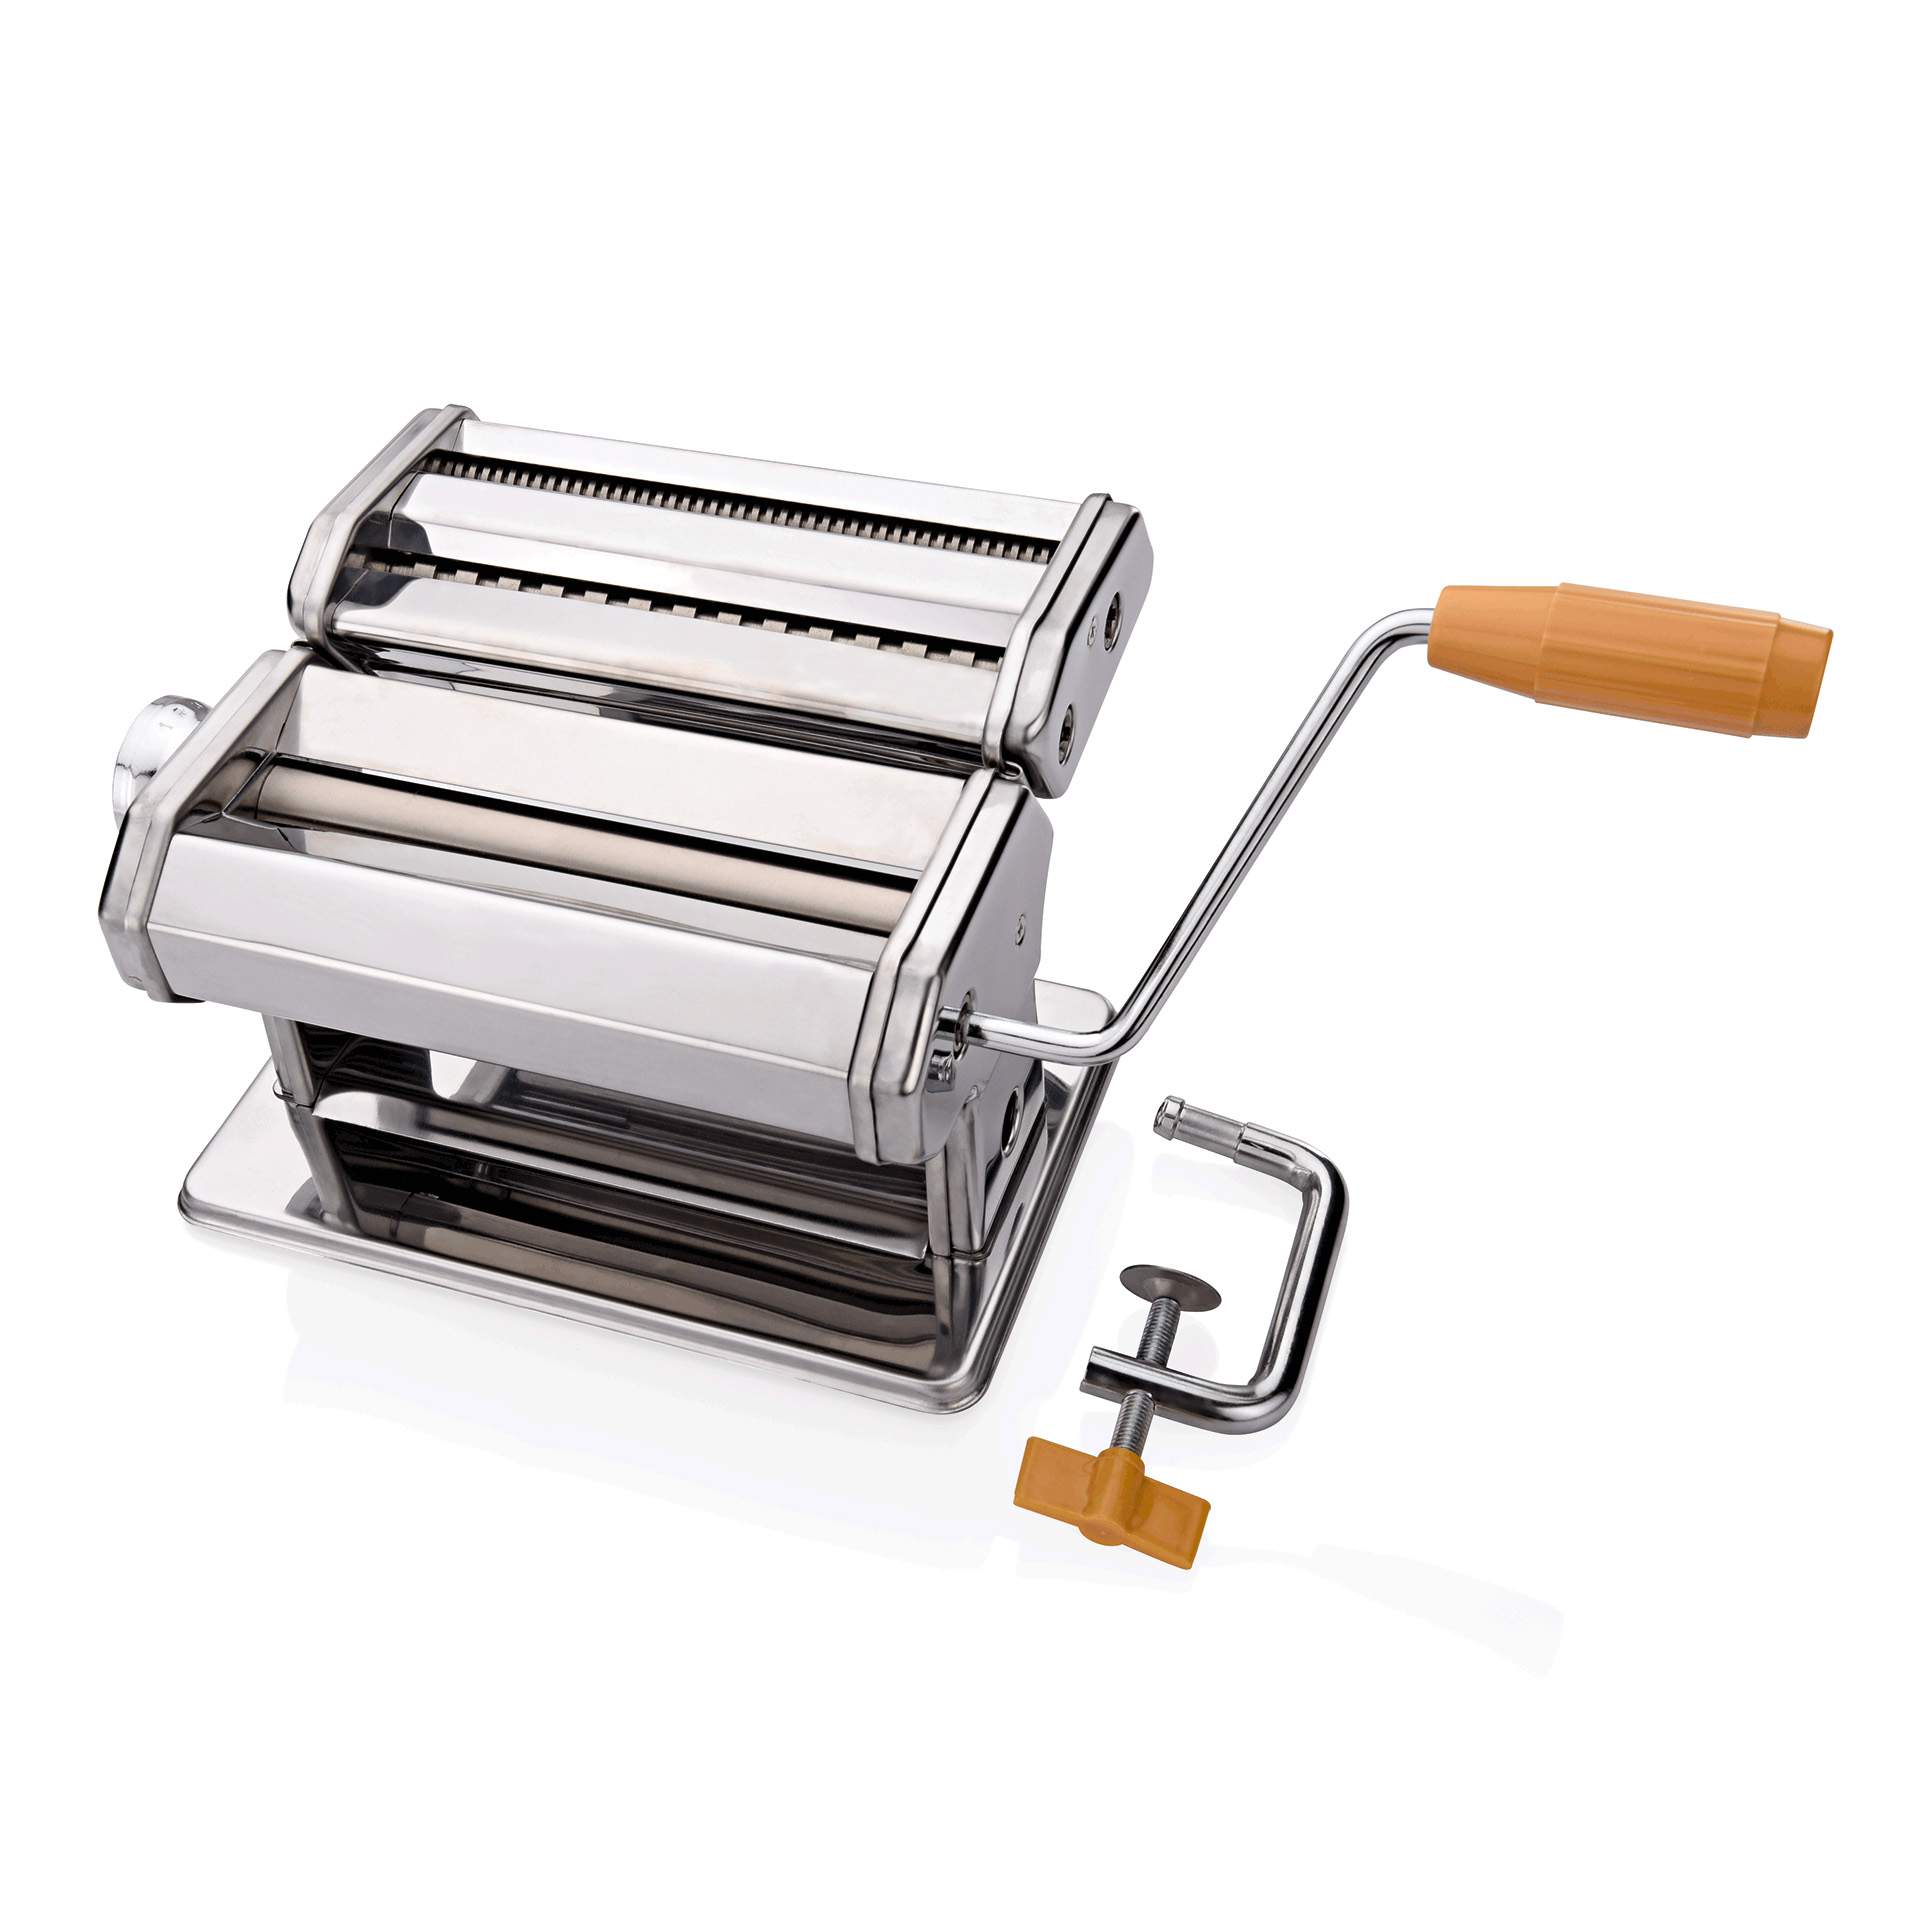 Pastamaschine - mit Tischhalterung - Abm. 20 x 21 x 14 cm - verchromt - 1684000-A